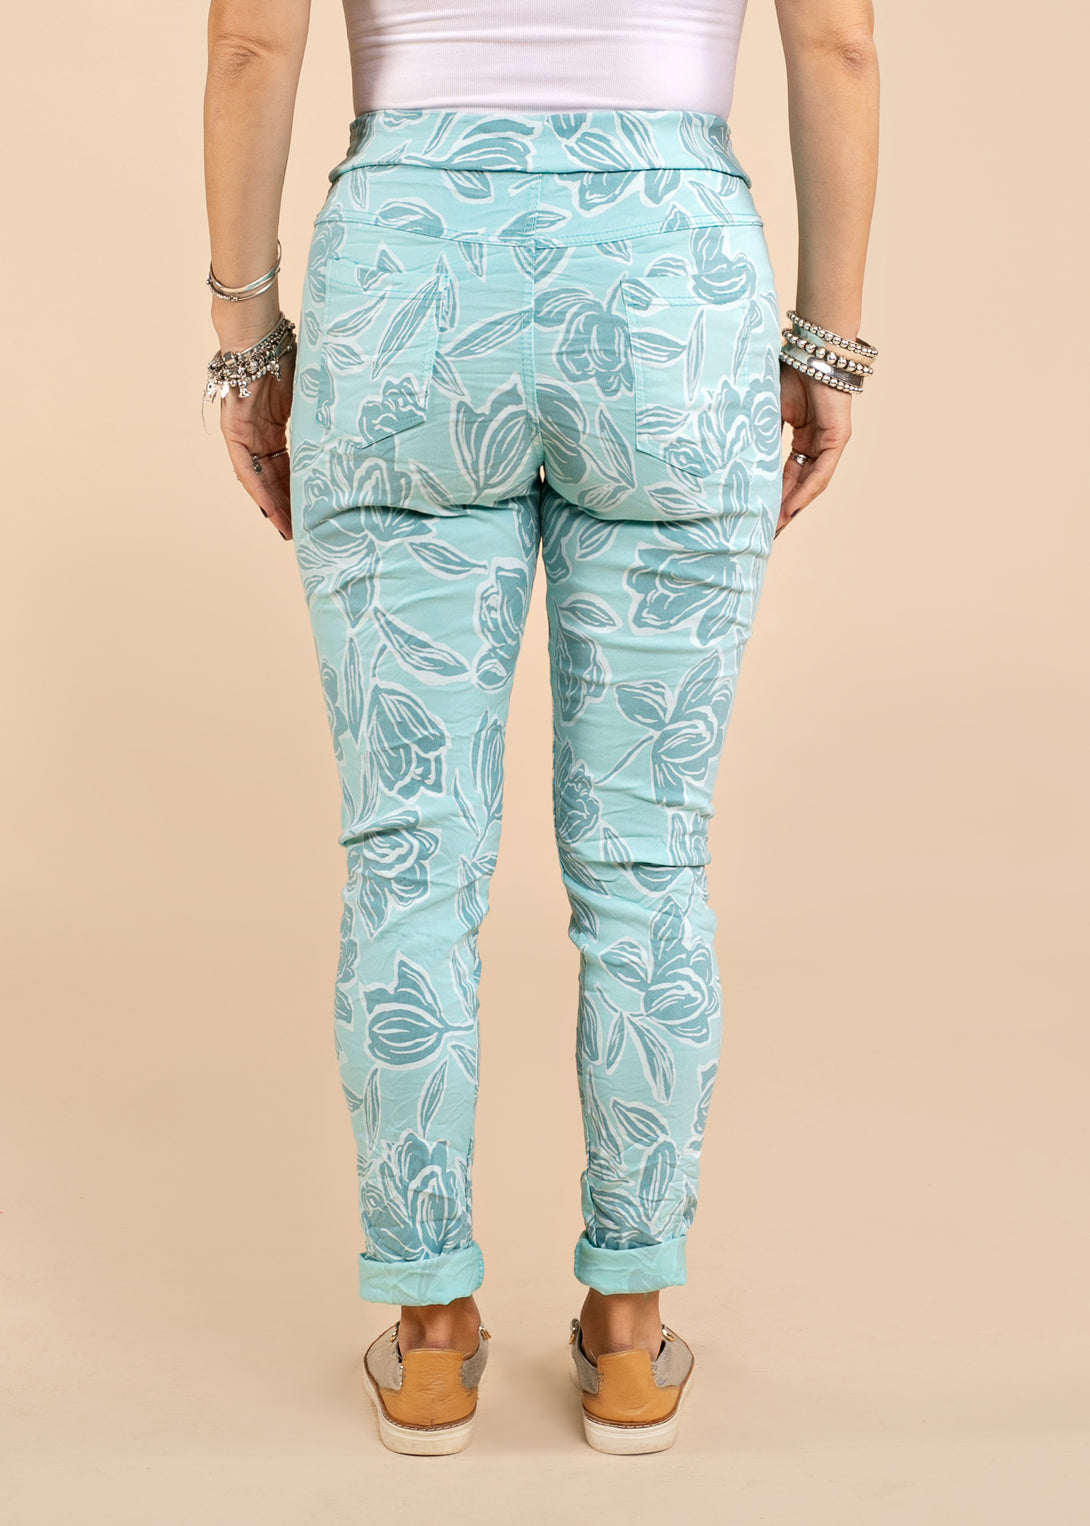 Cali Pants in Aqua Mist - Imagine Fashion